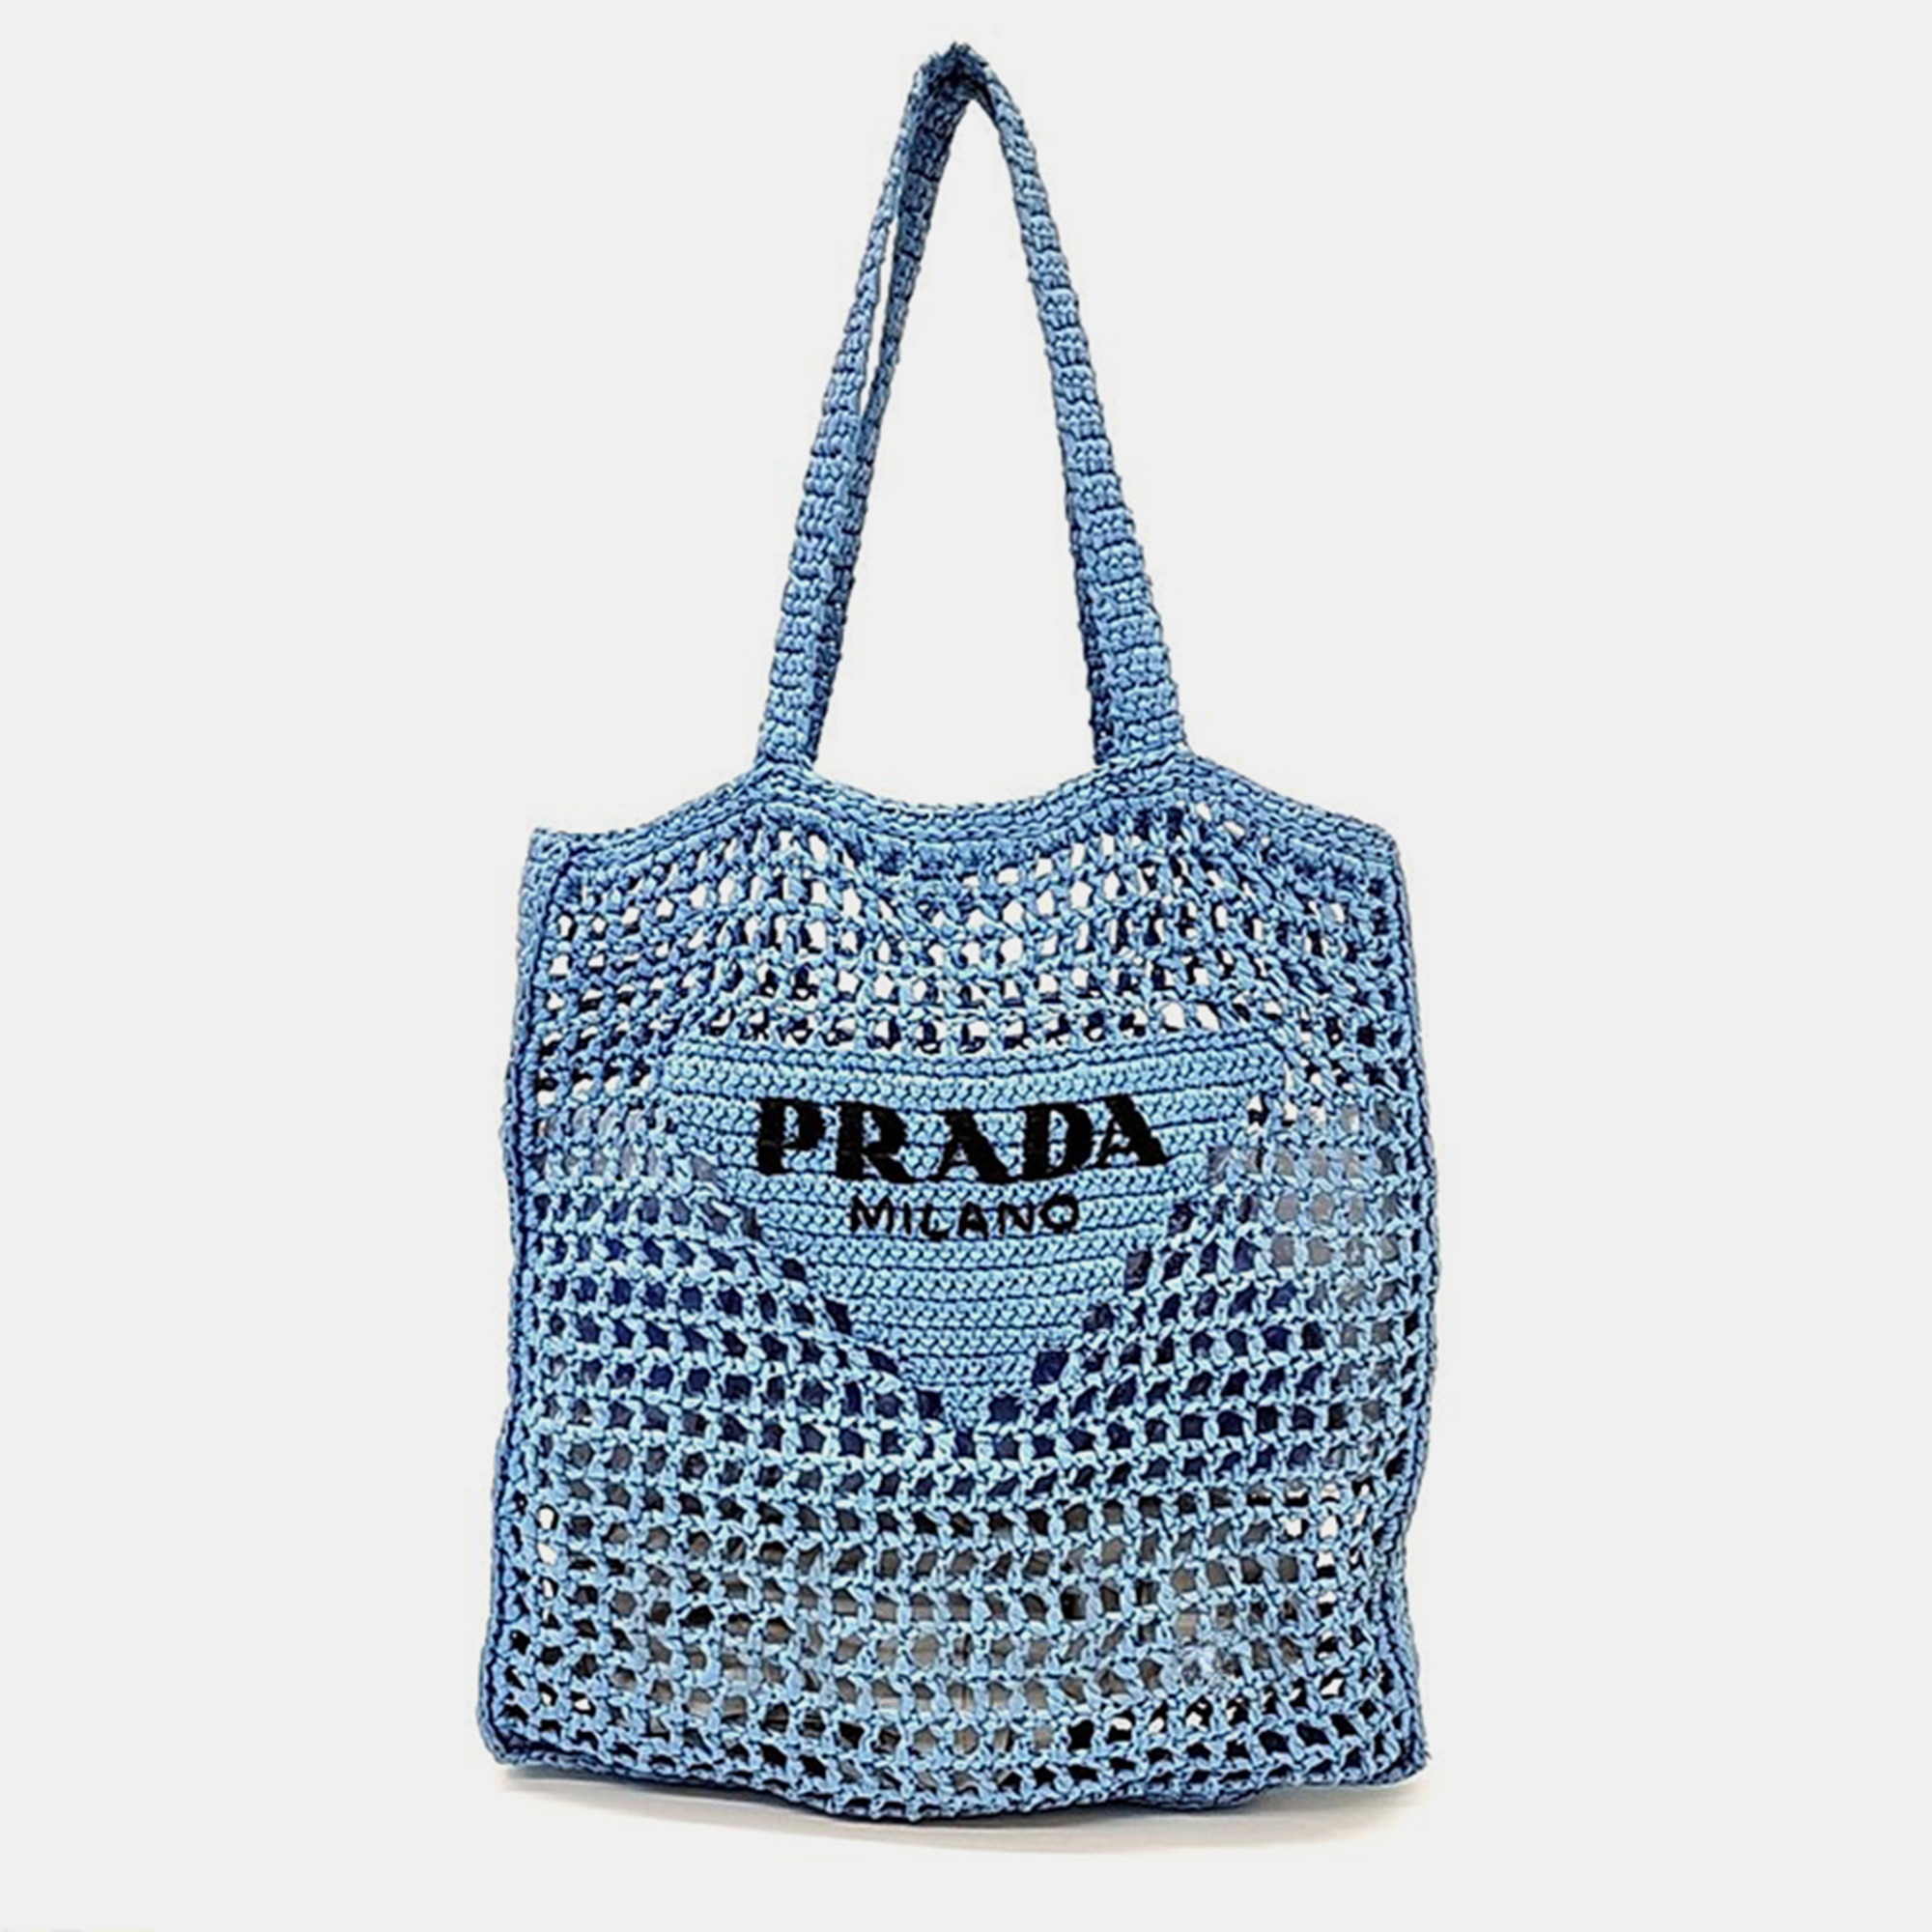 Prada light blue straw crochet tote bag